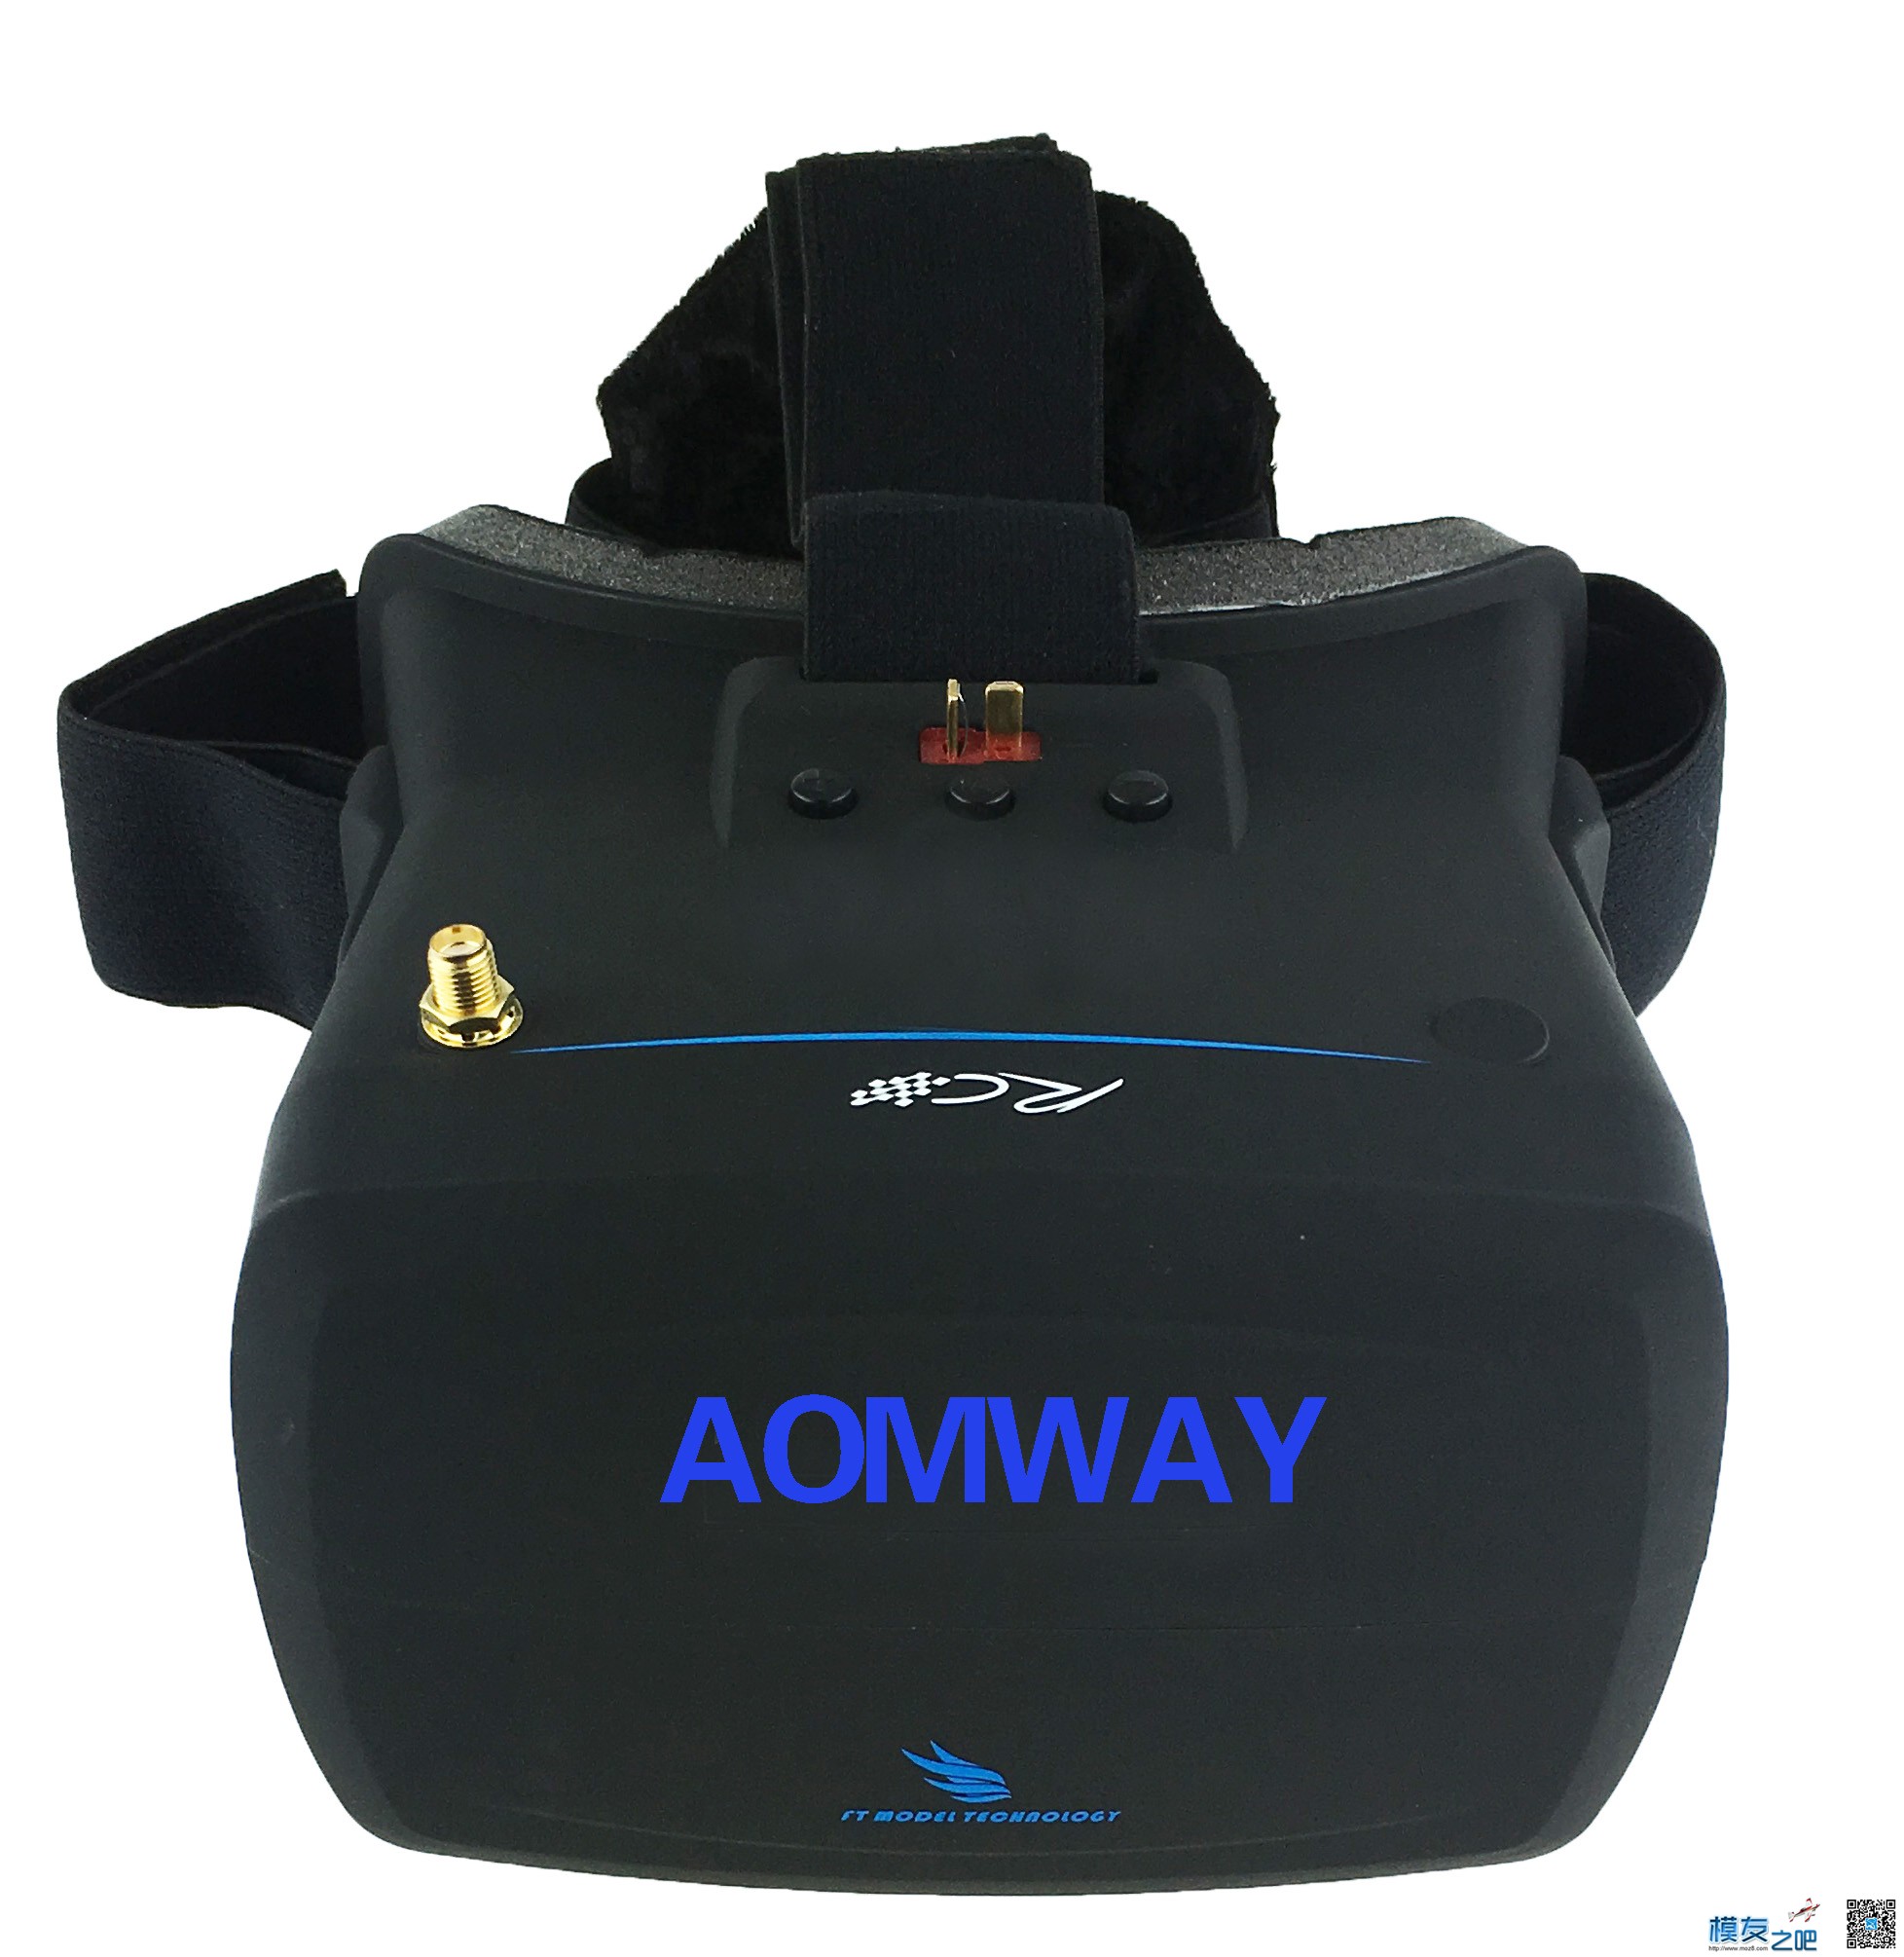 【模友之吧】AOMWAY VR Goggles V1 视频眼镜测试团购活动！ 电池,天线,图传,接收机,论坛活动 作者:飞天狼 6757 